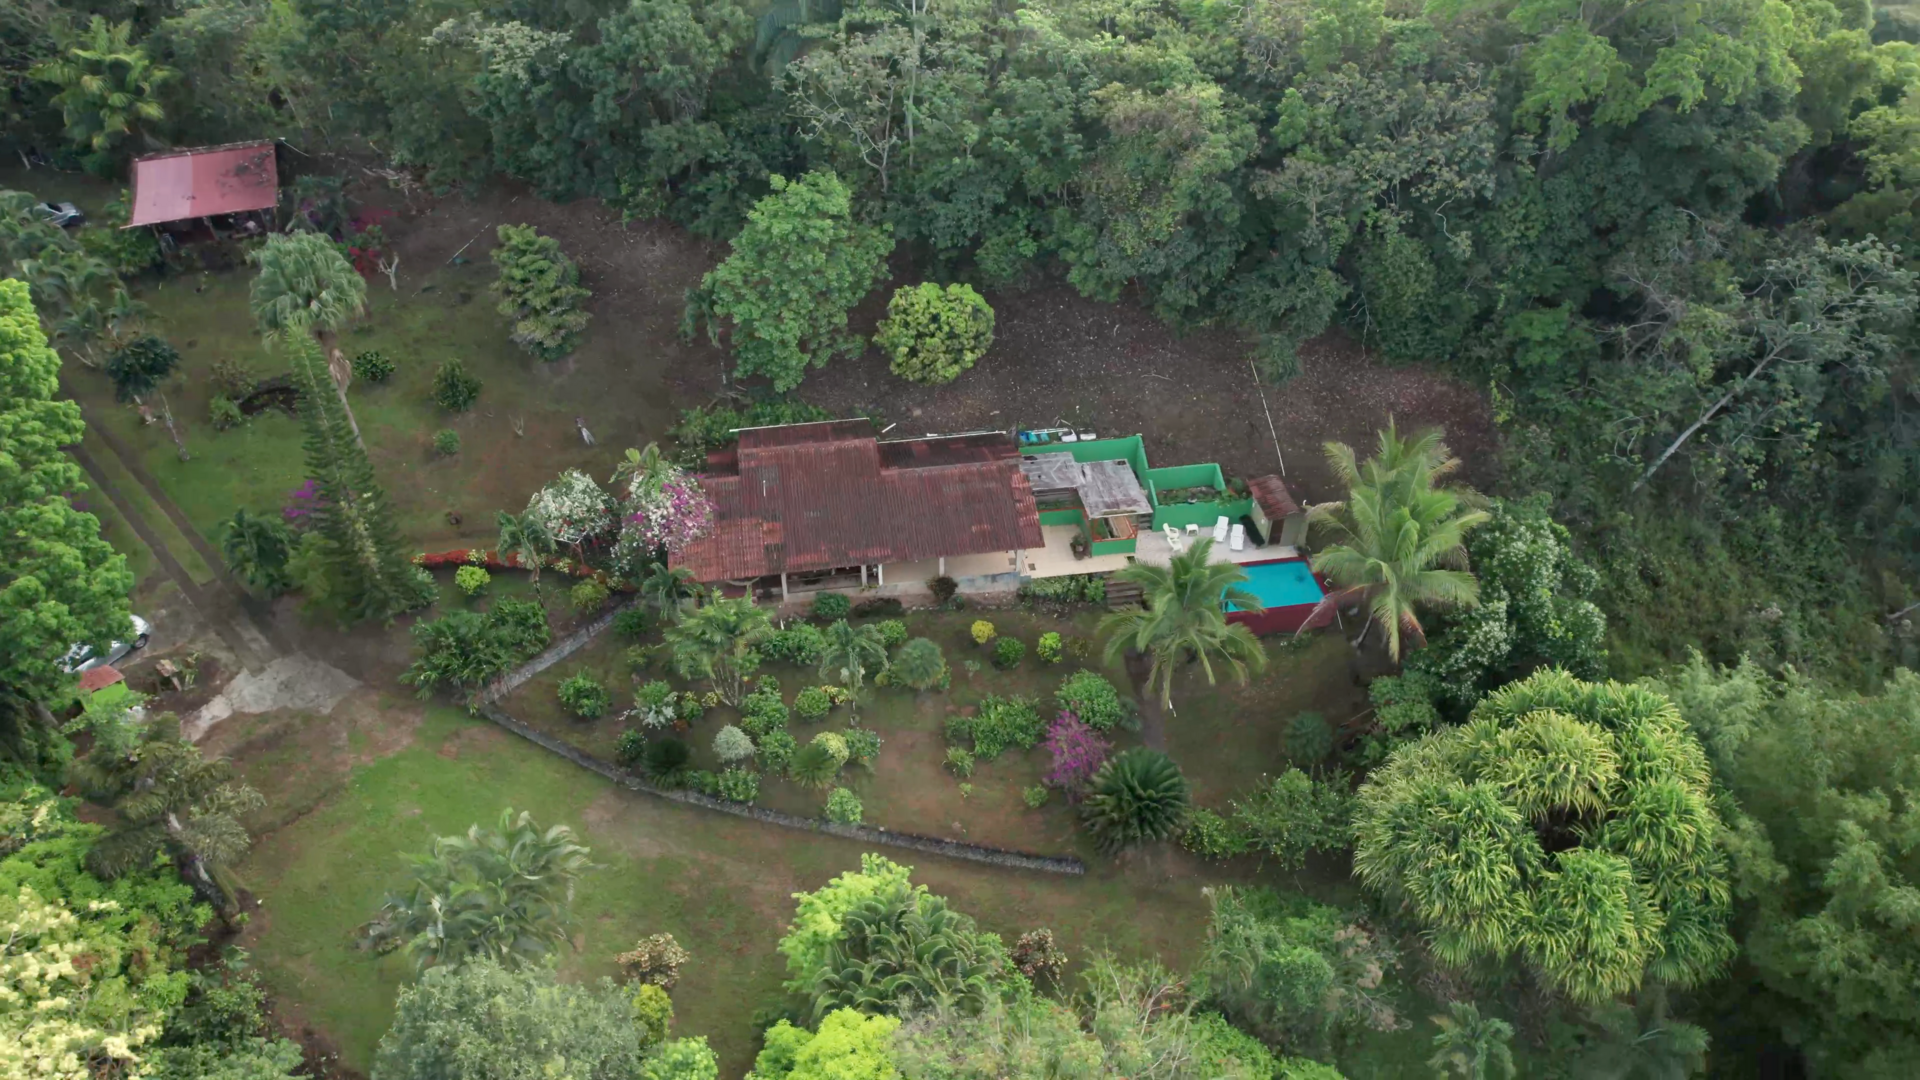 Eco-Friendly Resort Property near Santa Fe National Park, Panama